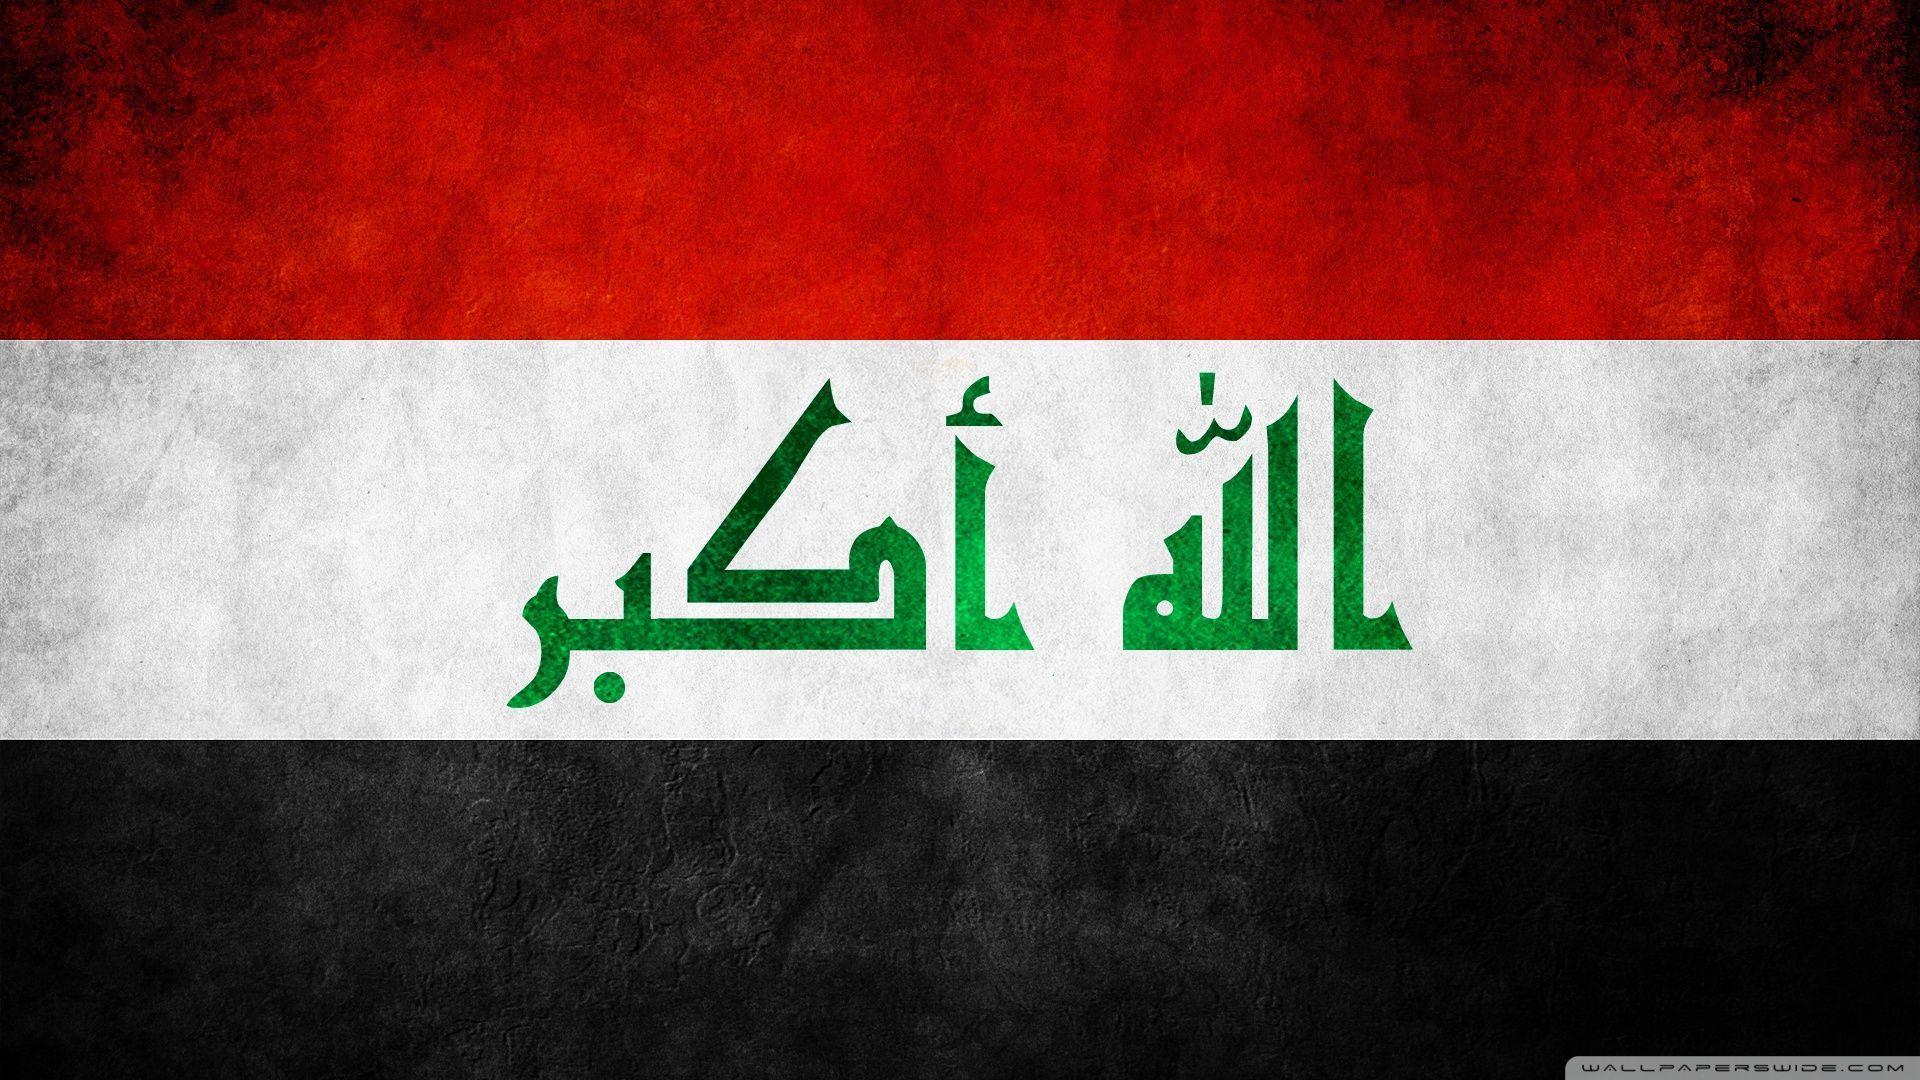 Iraq Flag 2K desk 4K wallpapers Widescreen High Definition